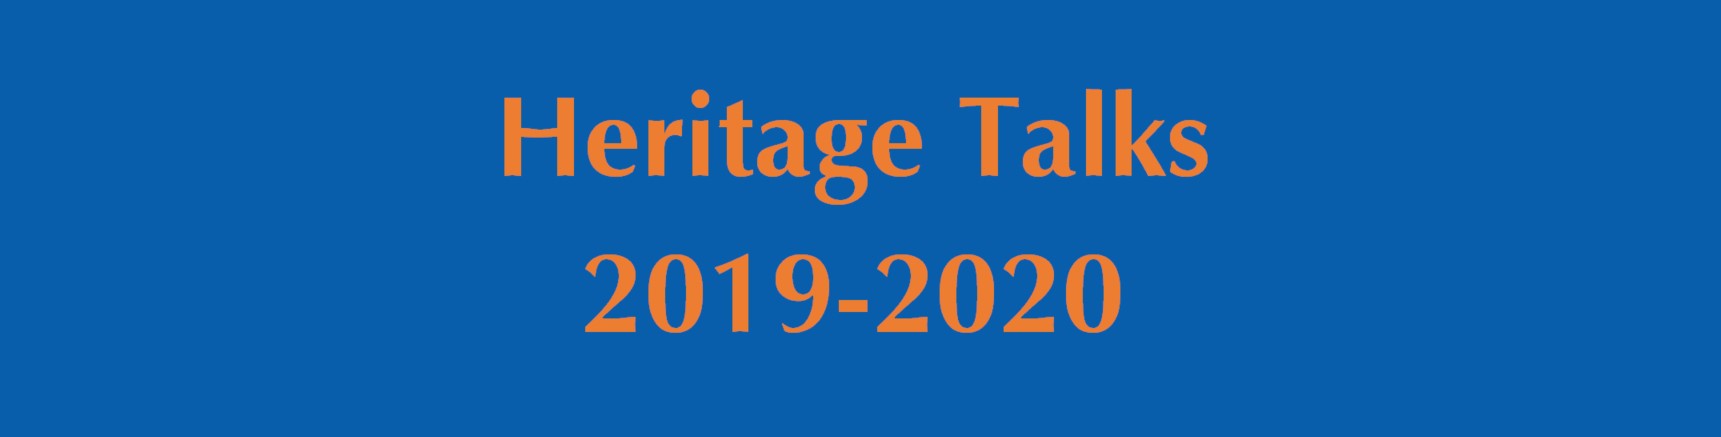 HeritageTalks19-20